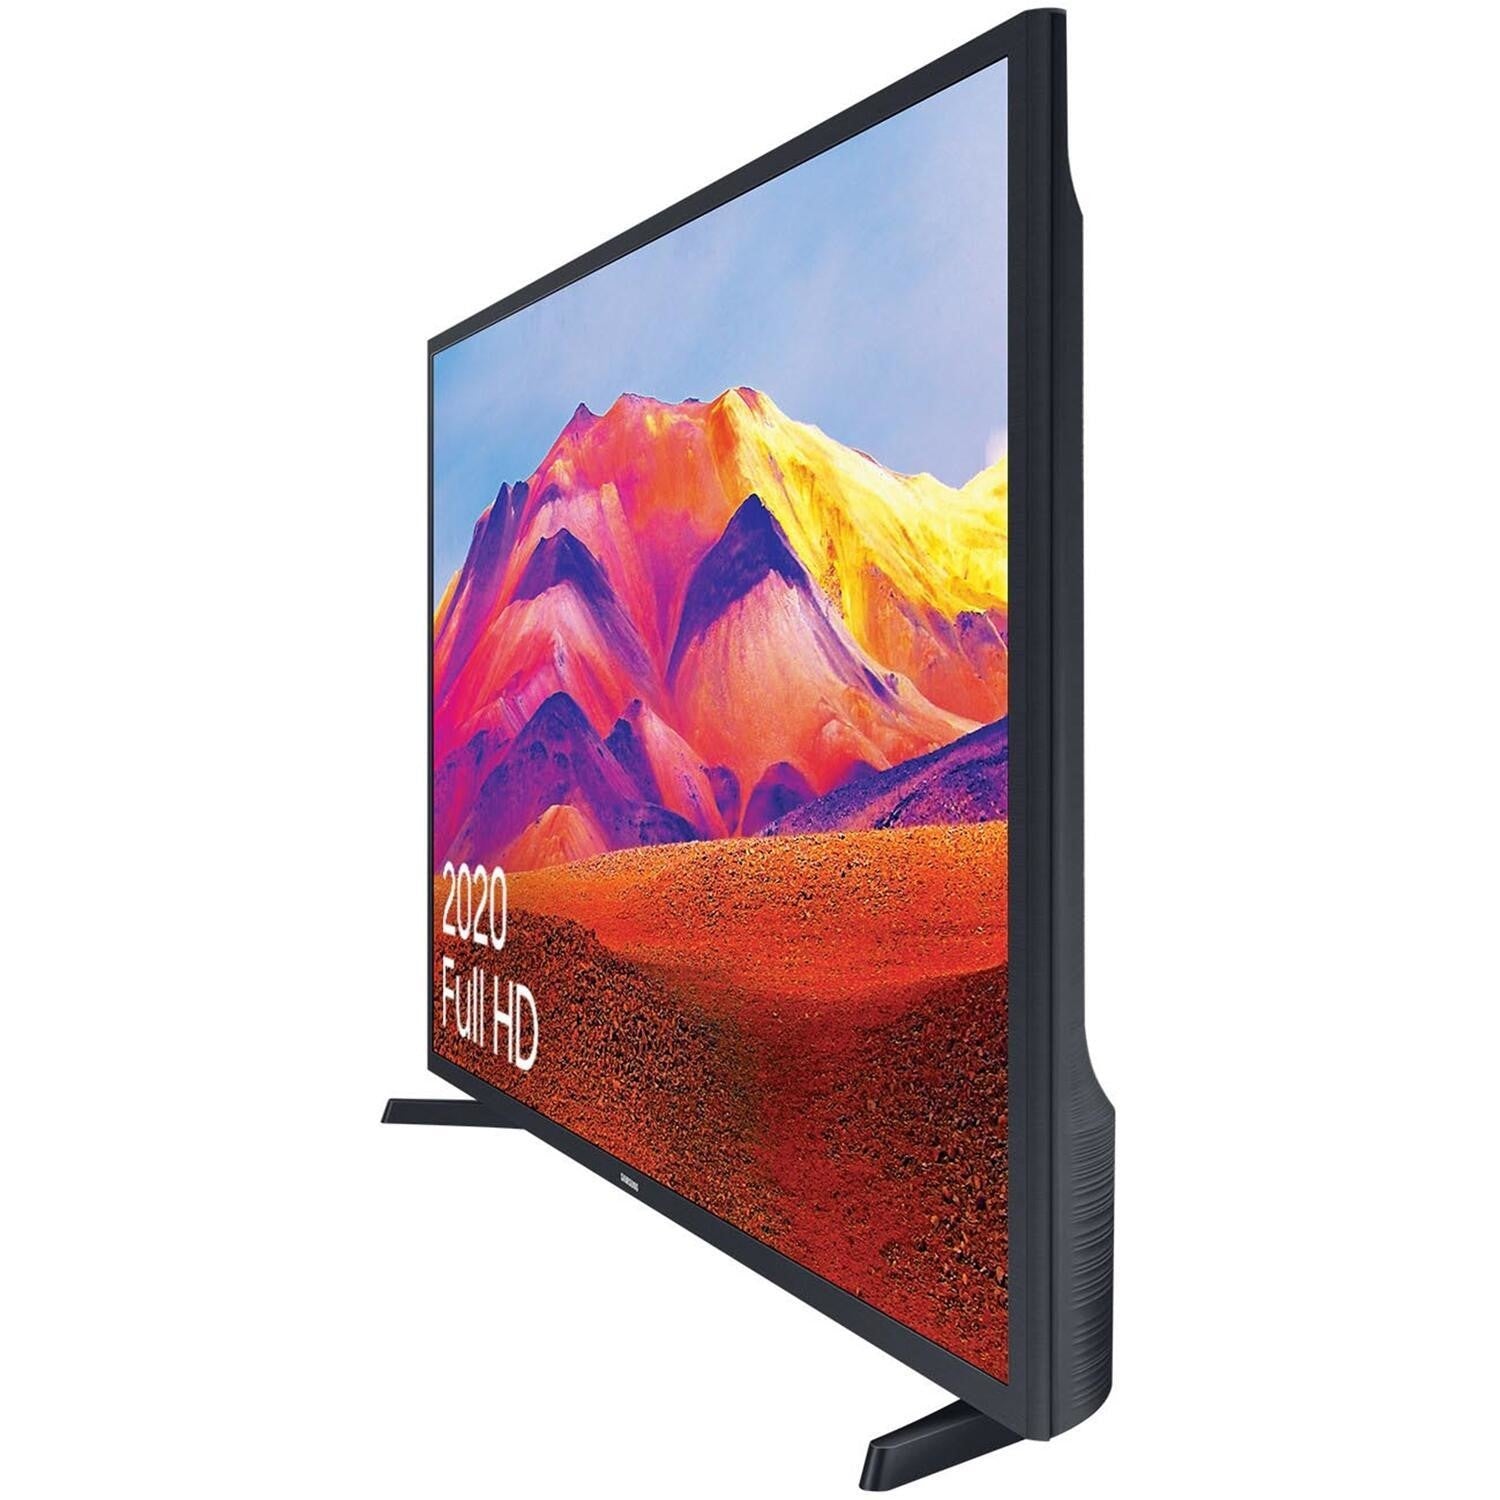 Samsung 32" T5300 Full HD HDR Smart TV | UE32T5300CKXXU